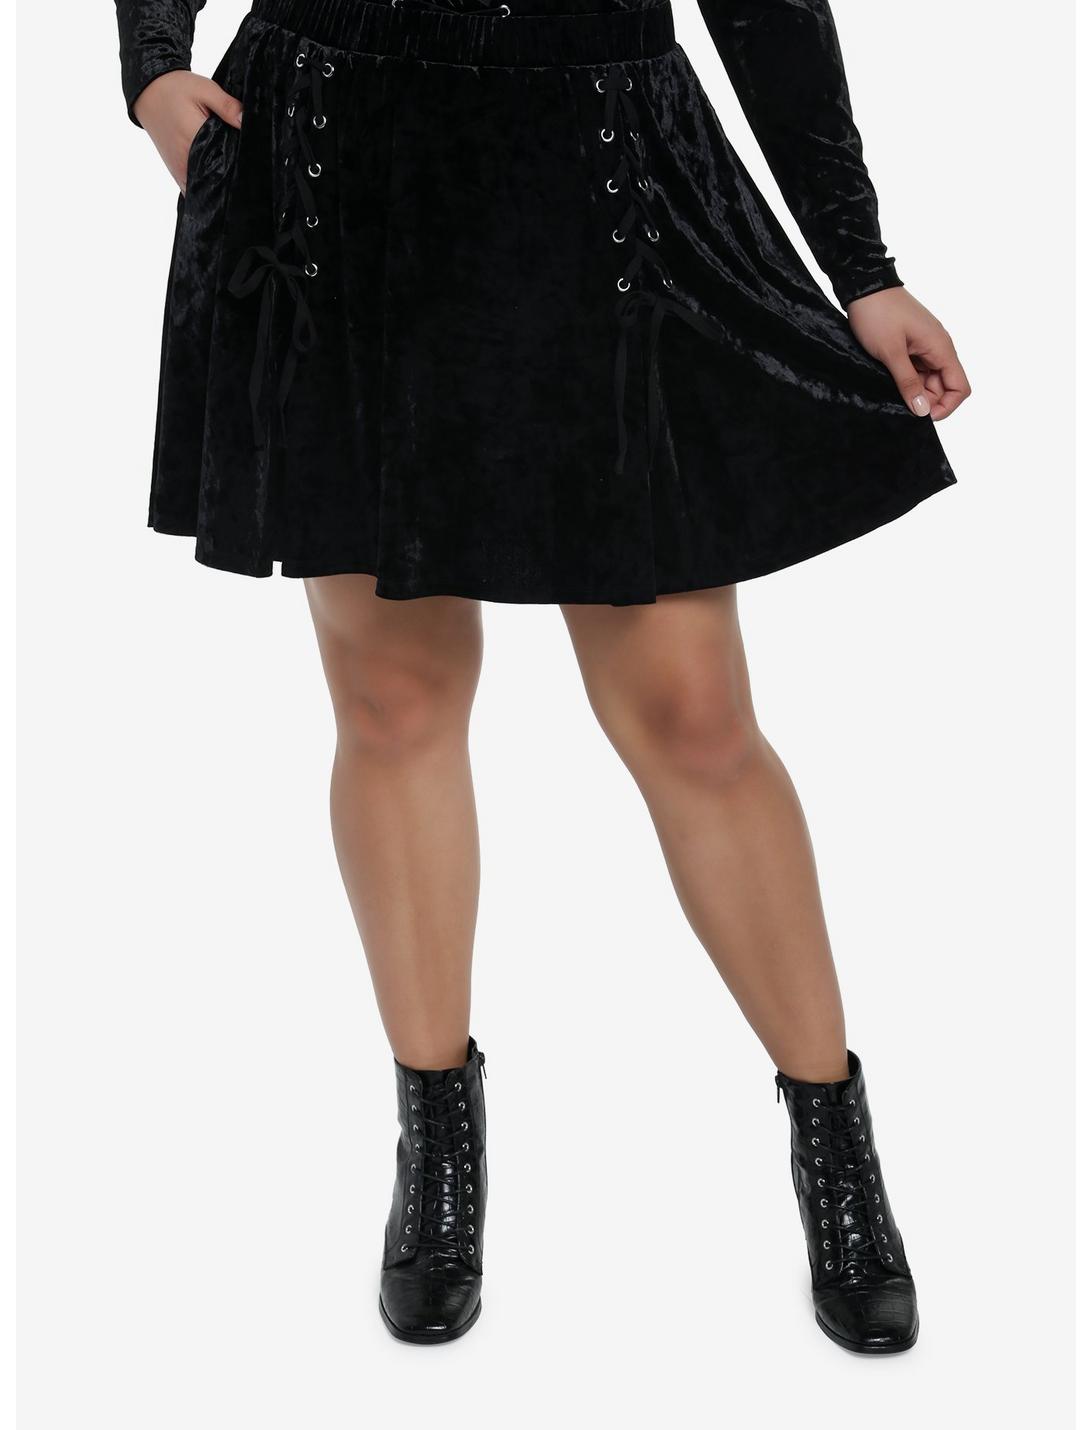 Crushed Black Velvet Lace-Up Skater Skirt Plus Size, BLACK, hi-res